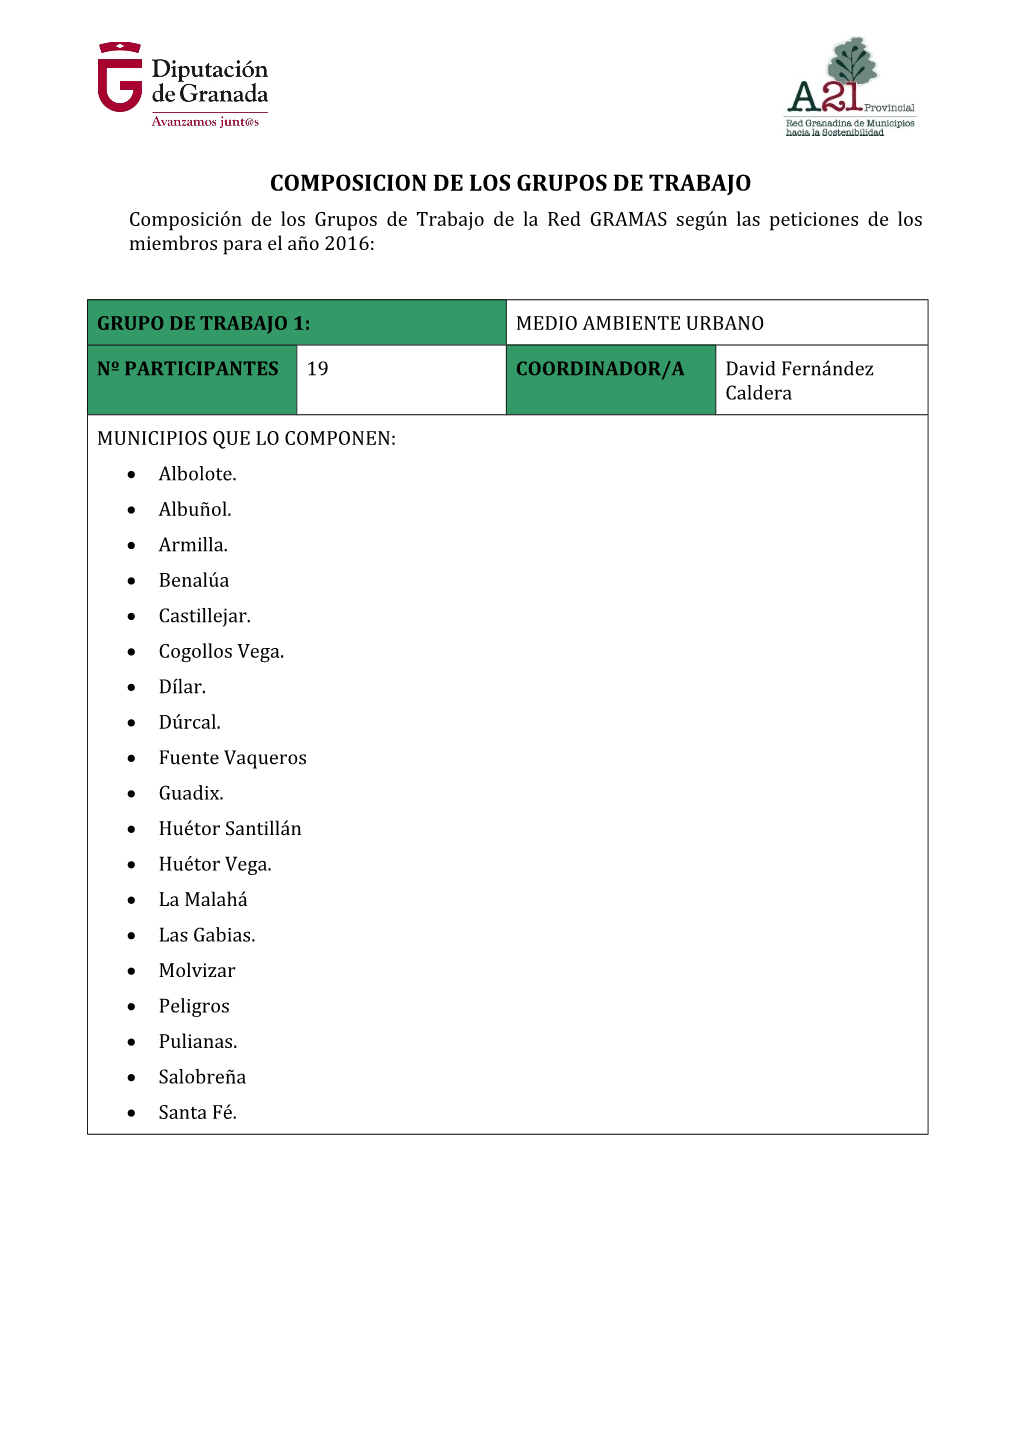 COMPOSICION DE LOS GRUPOS DE TRABAJO Composición De Los Grupos De Trabajo De La Red GRAMAS Según Las Peticiones De Los Miembros Para El Año 2016